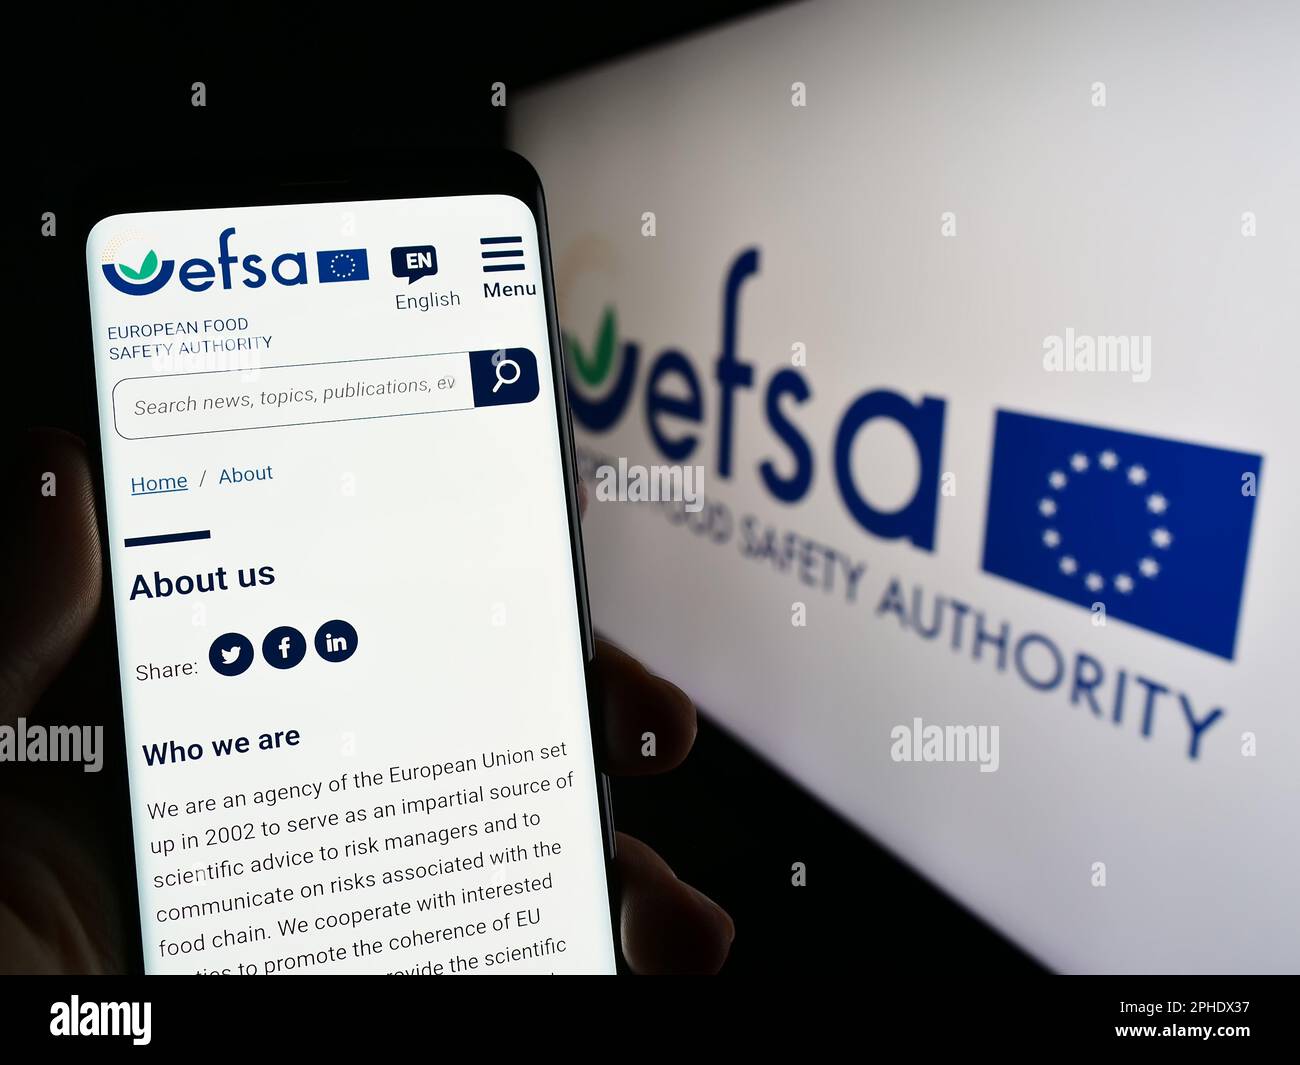 Persona che detiene un telefono cellulare con il sito web dell'Agenzia europea per la sicurezza alimentare (EFSA) sullo schermo con il logo. Messa a fuoco al centro del display del telefono. Foto Stock